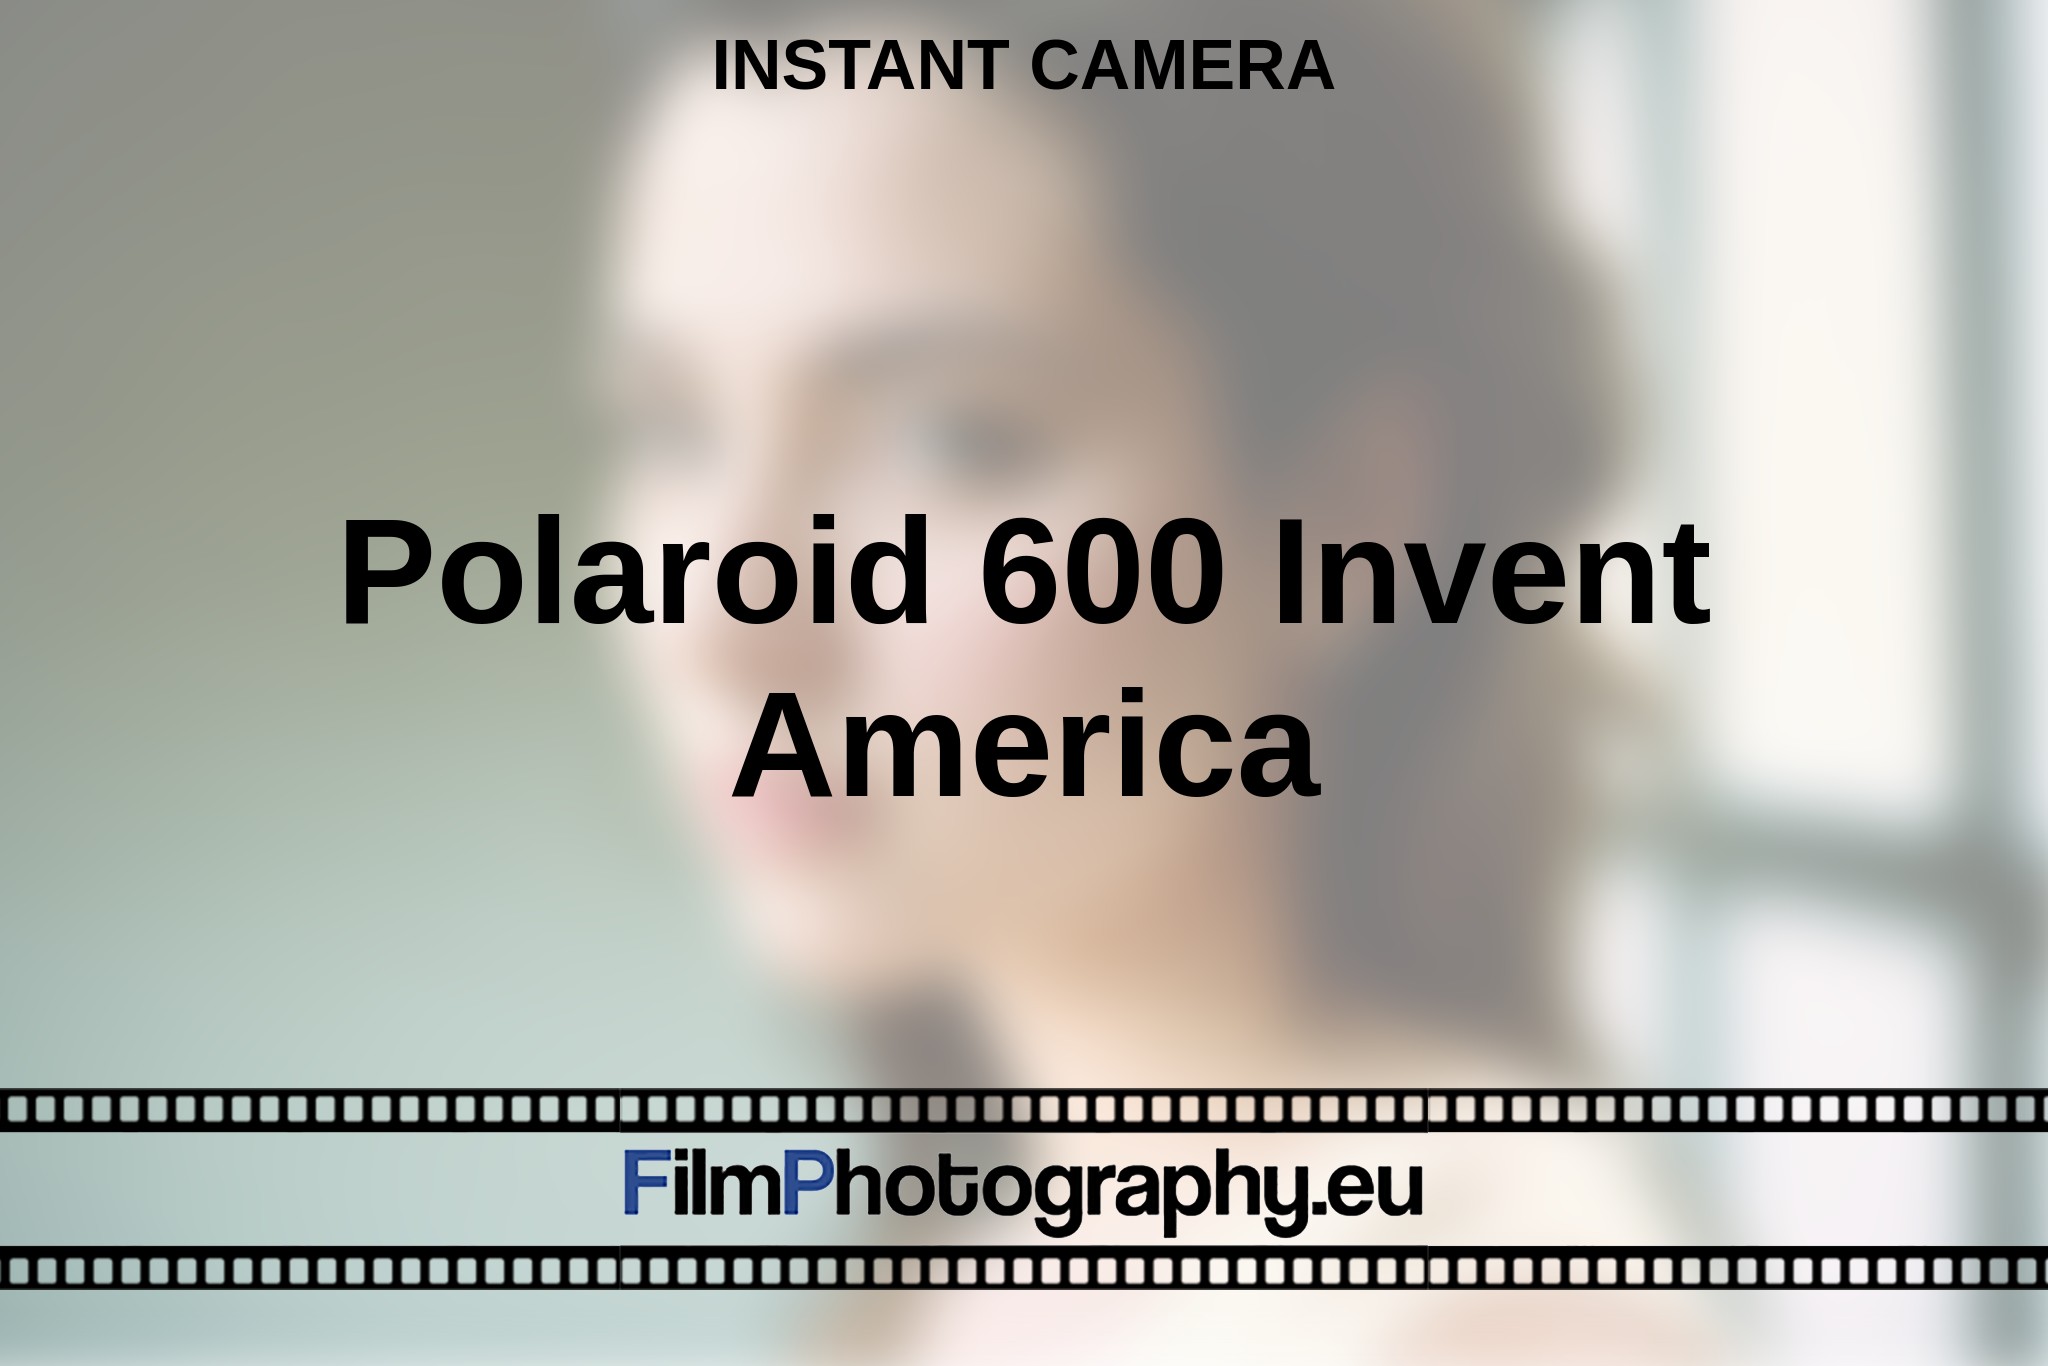 polaroid-600-invent-america-instant-camera-bnv.jpg